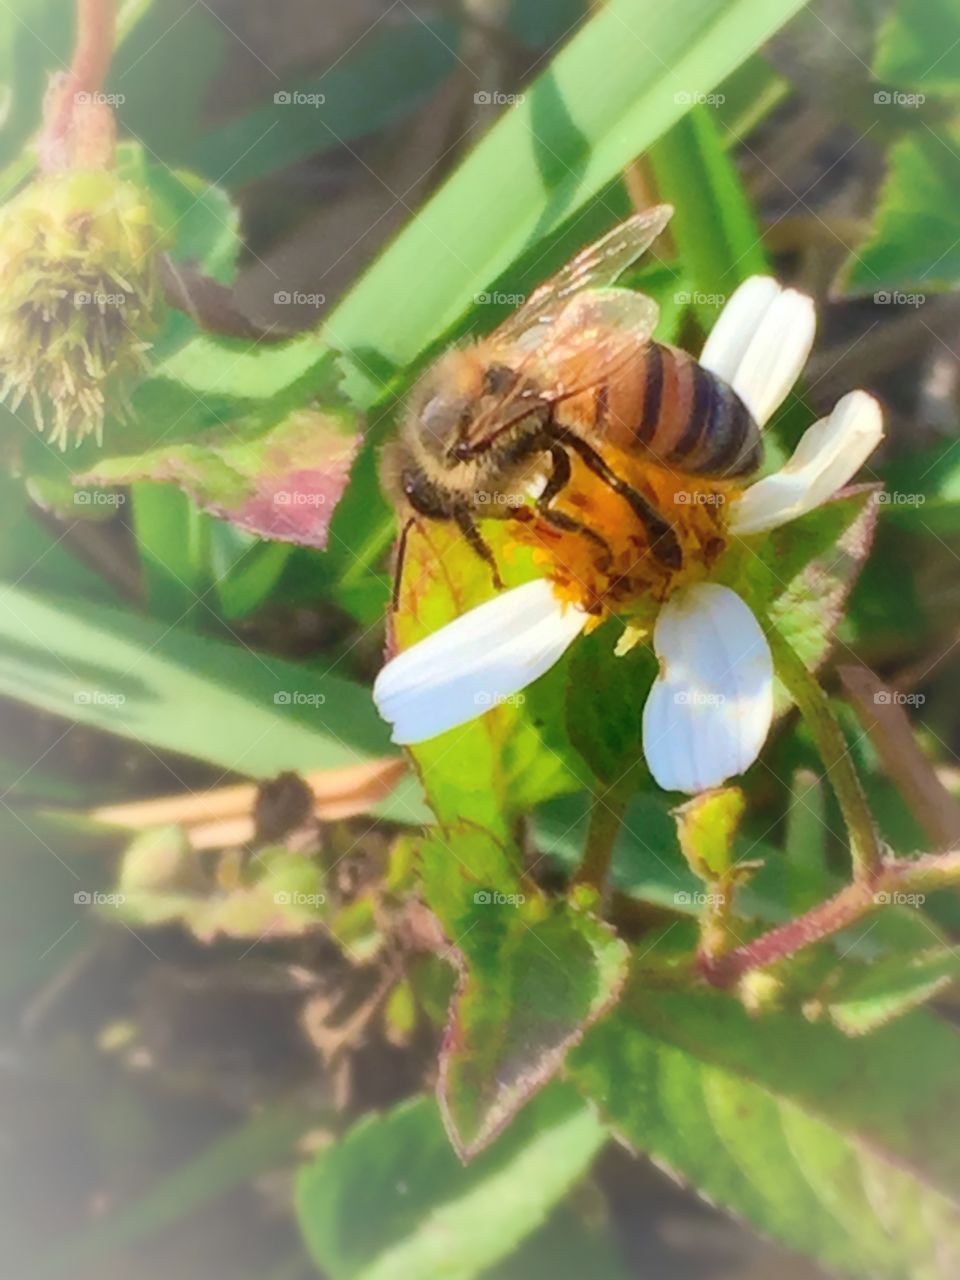 I <3 bees